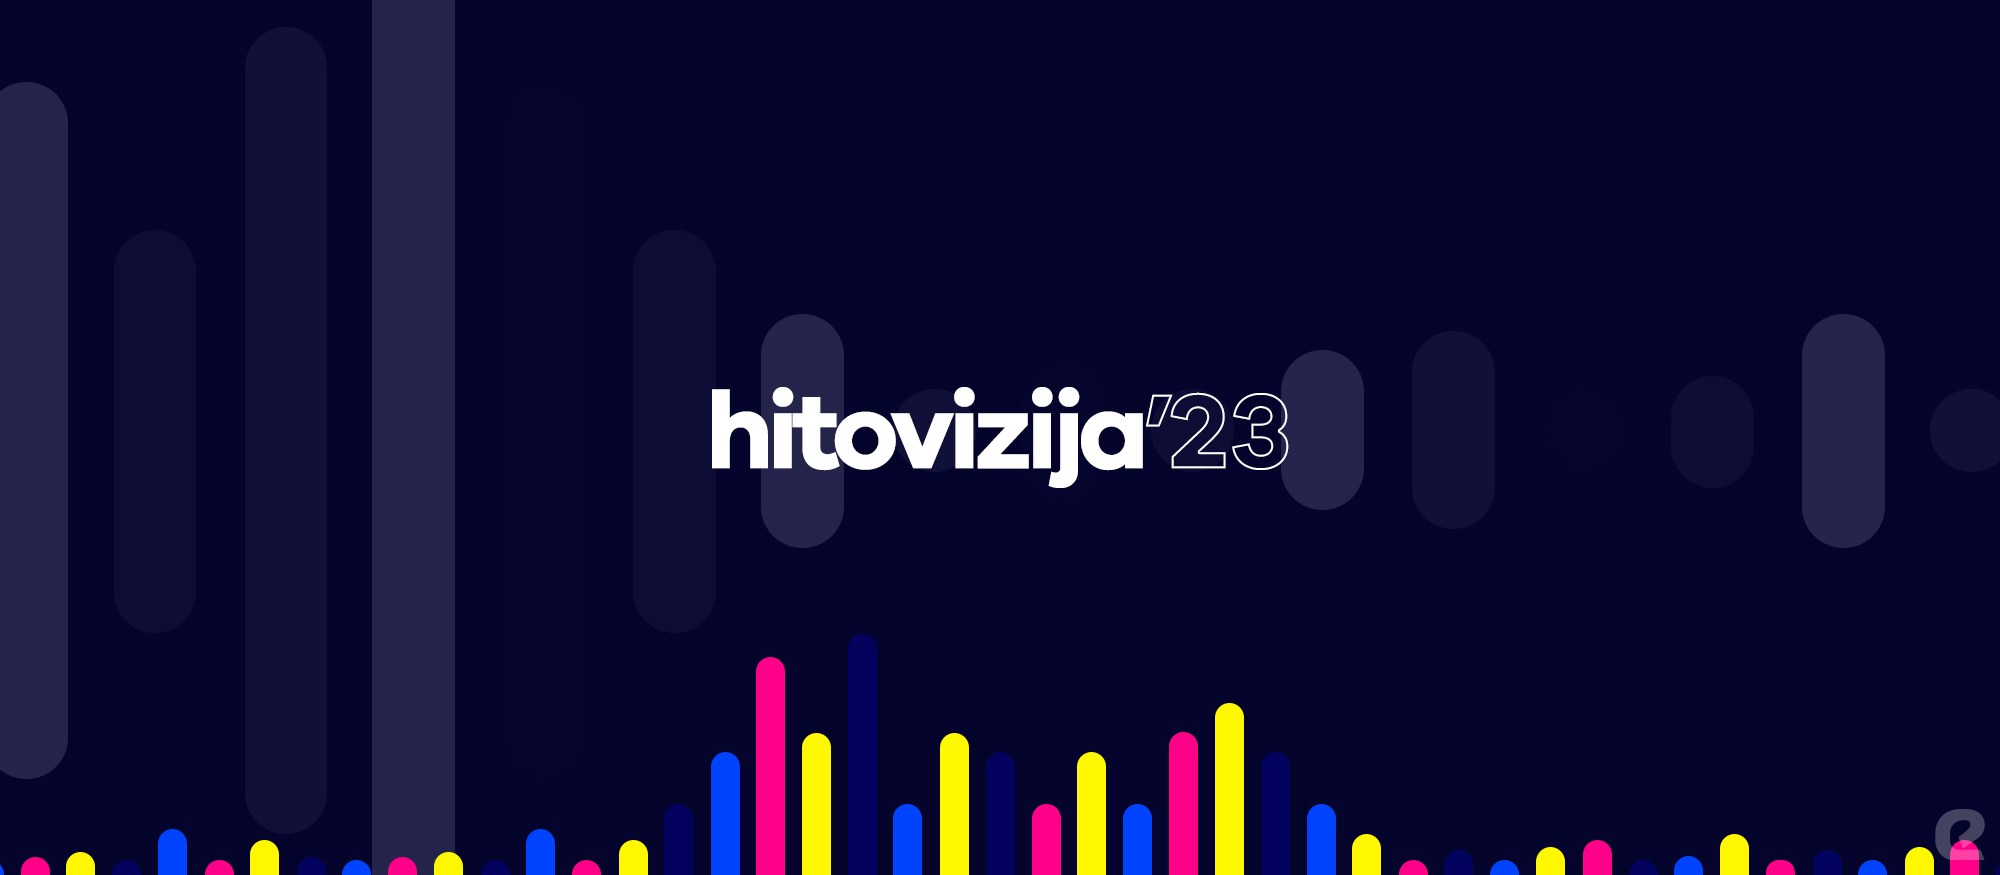 Logo projekta Hitovizija u kojem se prisjećamo hitova nacionalnih izbora eurovizijske sezone 2023.